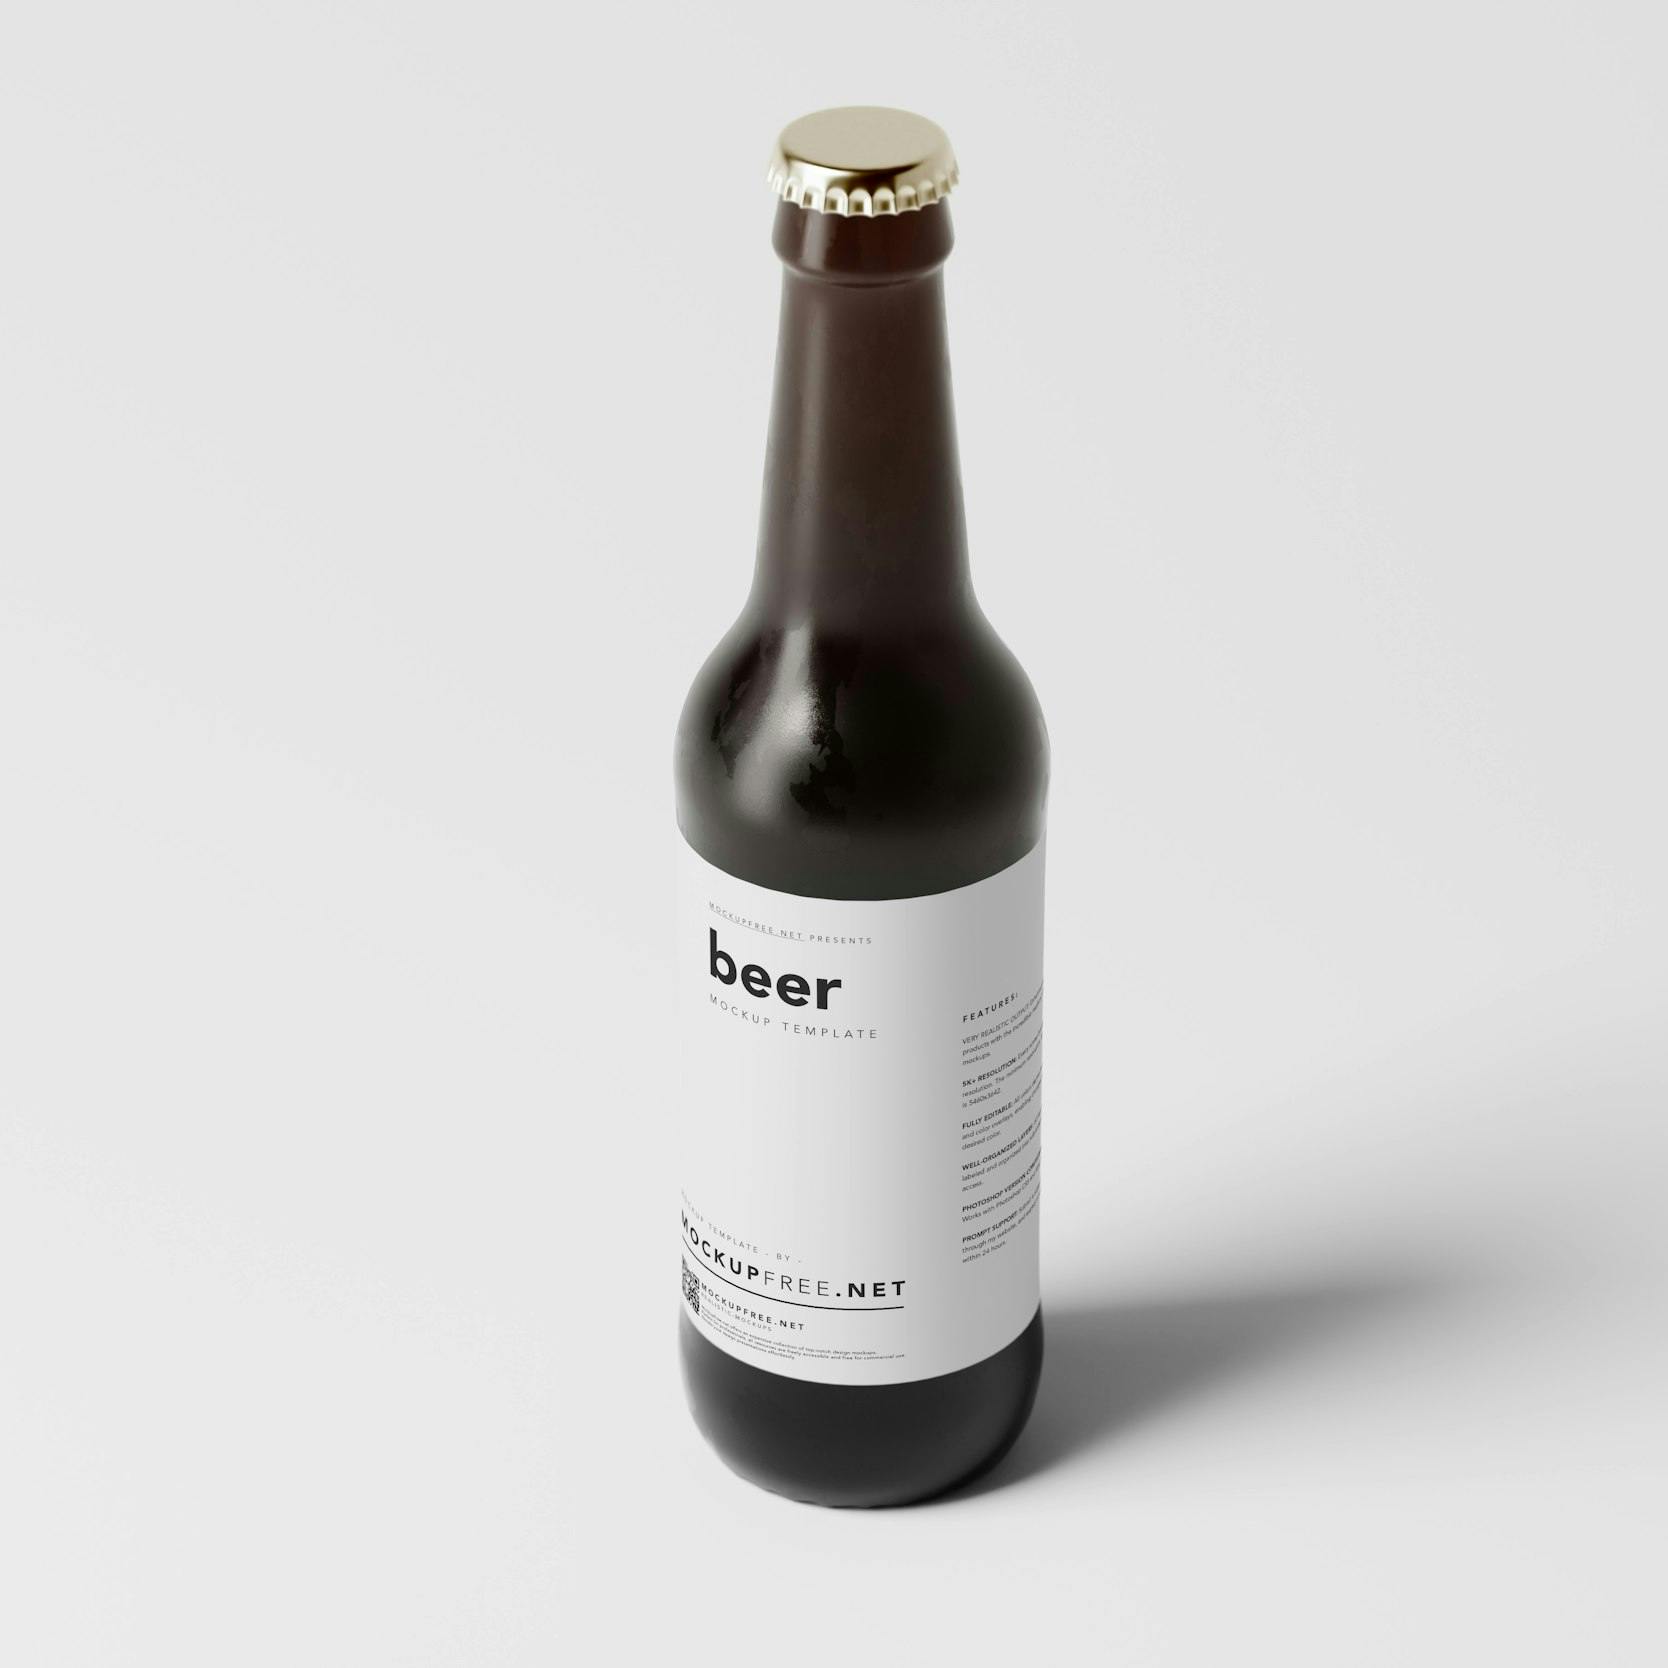 Bottiglia di birra con etichetta bianca avvolgente, su sfondo bianco.